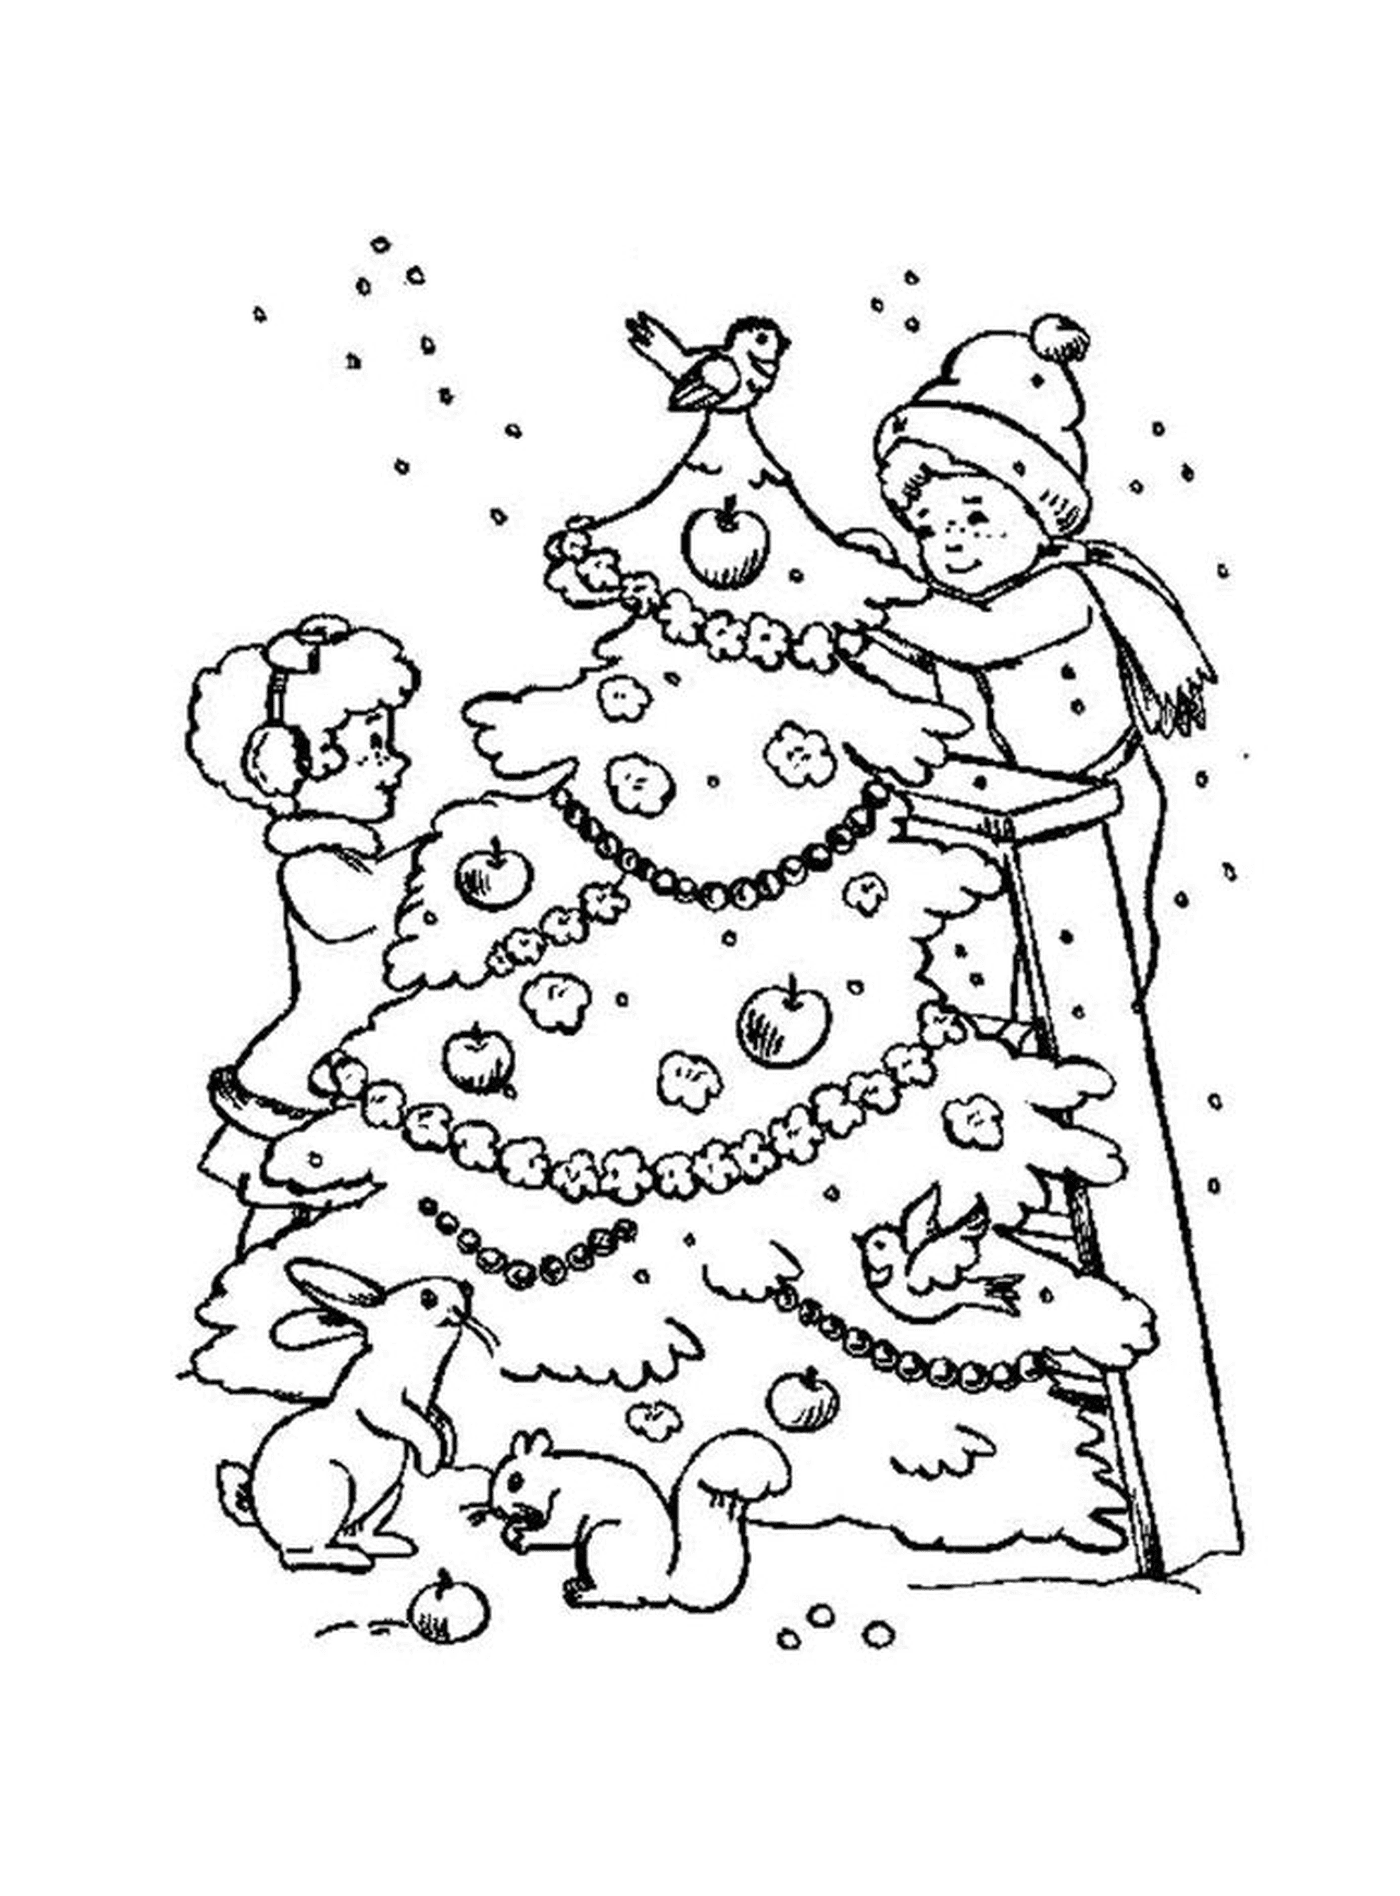  क्रिसमस के पेड़ के सामने खड़ा एक बच्चा 